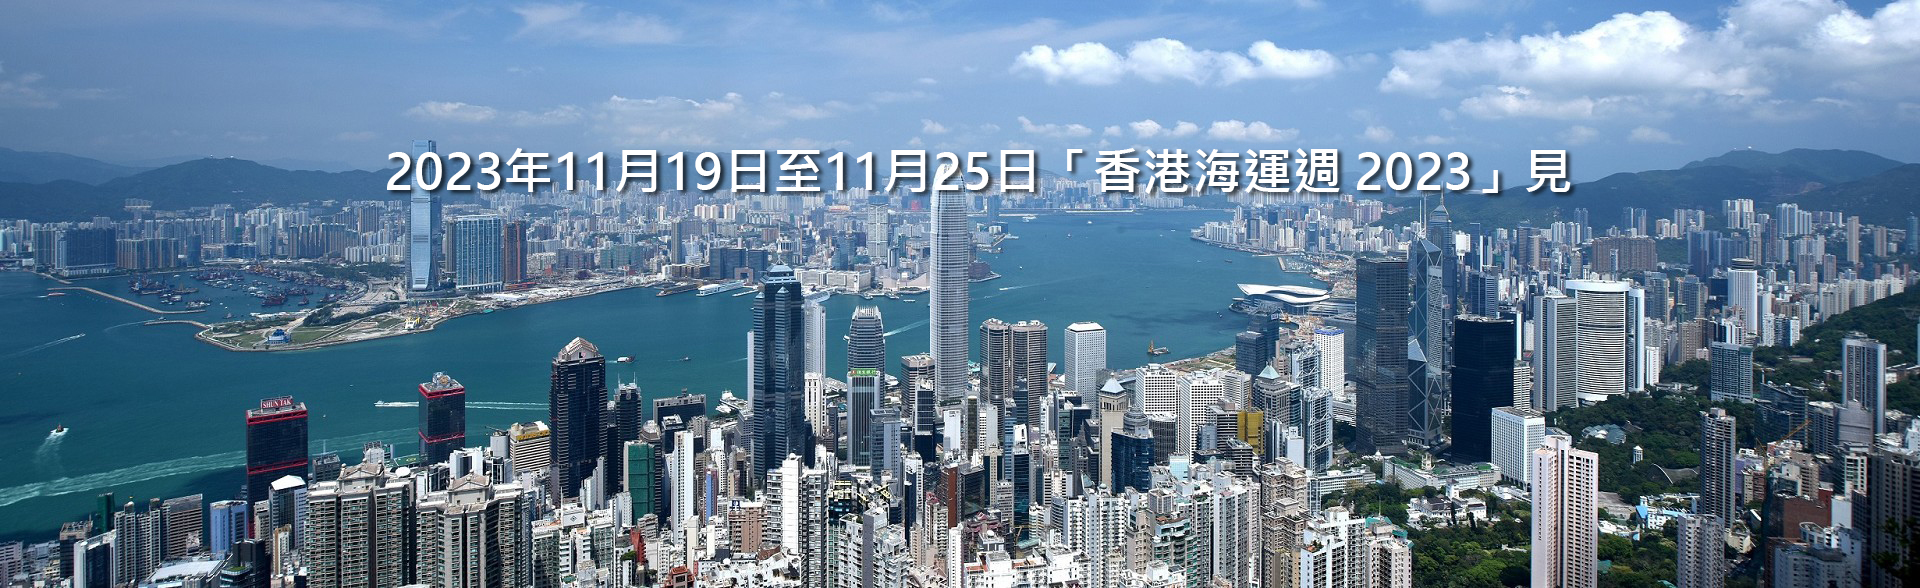 2023 年 11 月 19至25 日「香港海運週2023」見